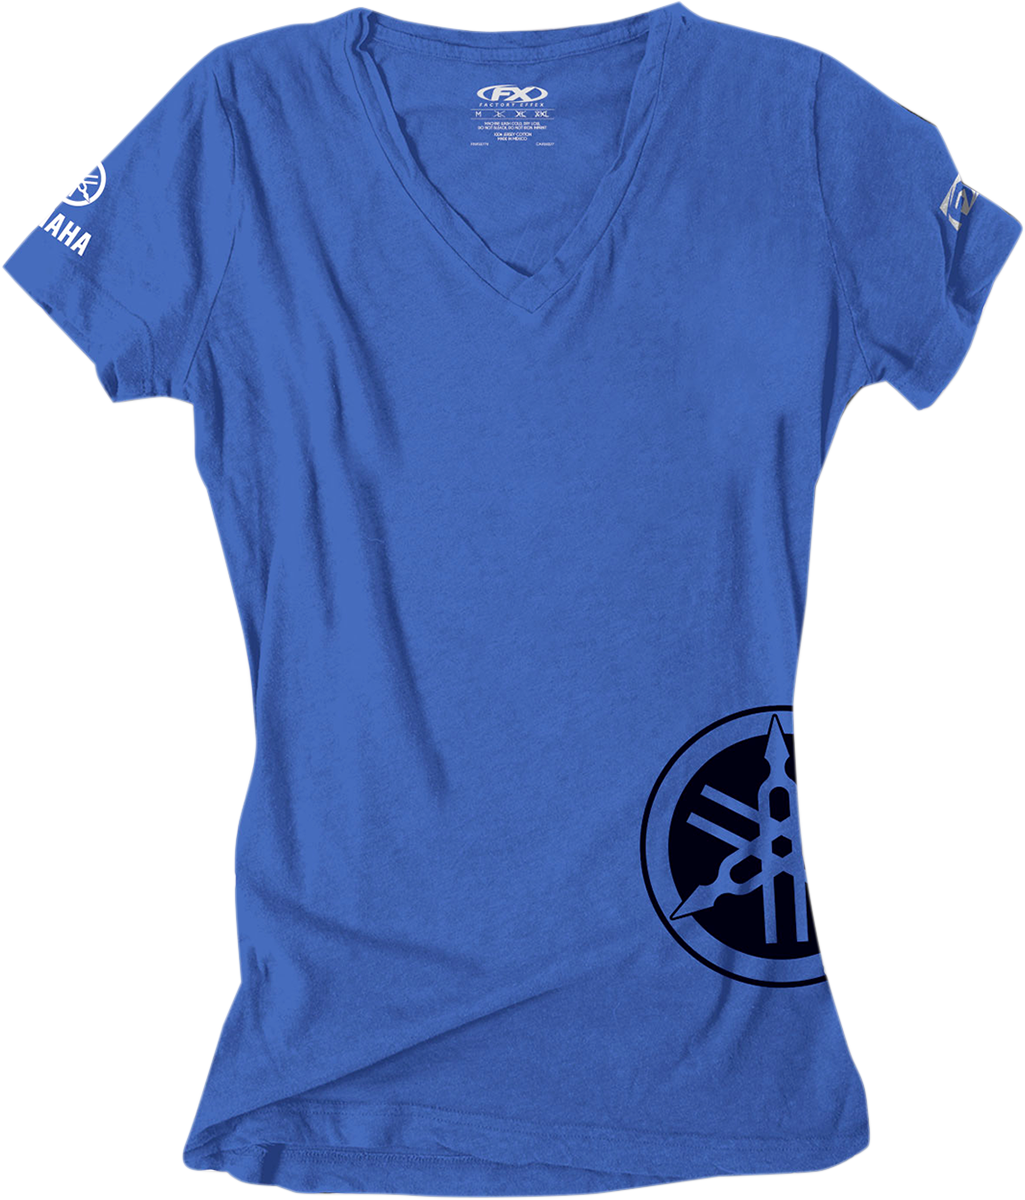 FACTORY EFFEX Camiseta Yamaha para mujer - Azul real - XL 17-87246 